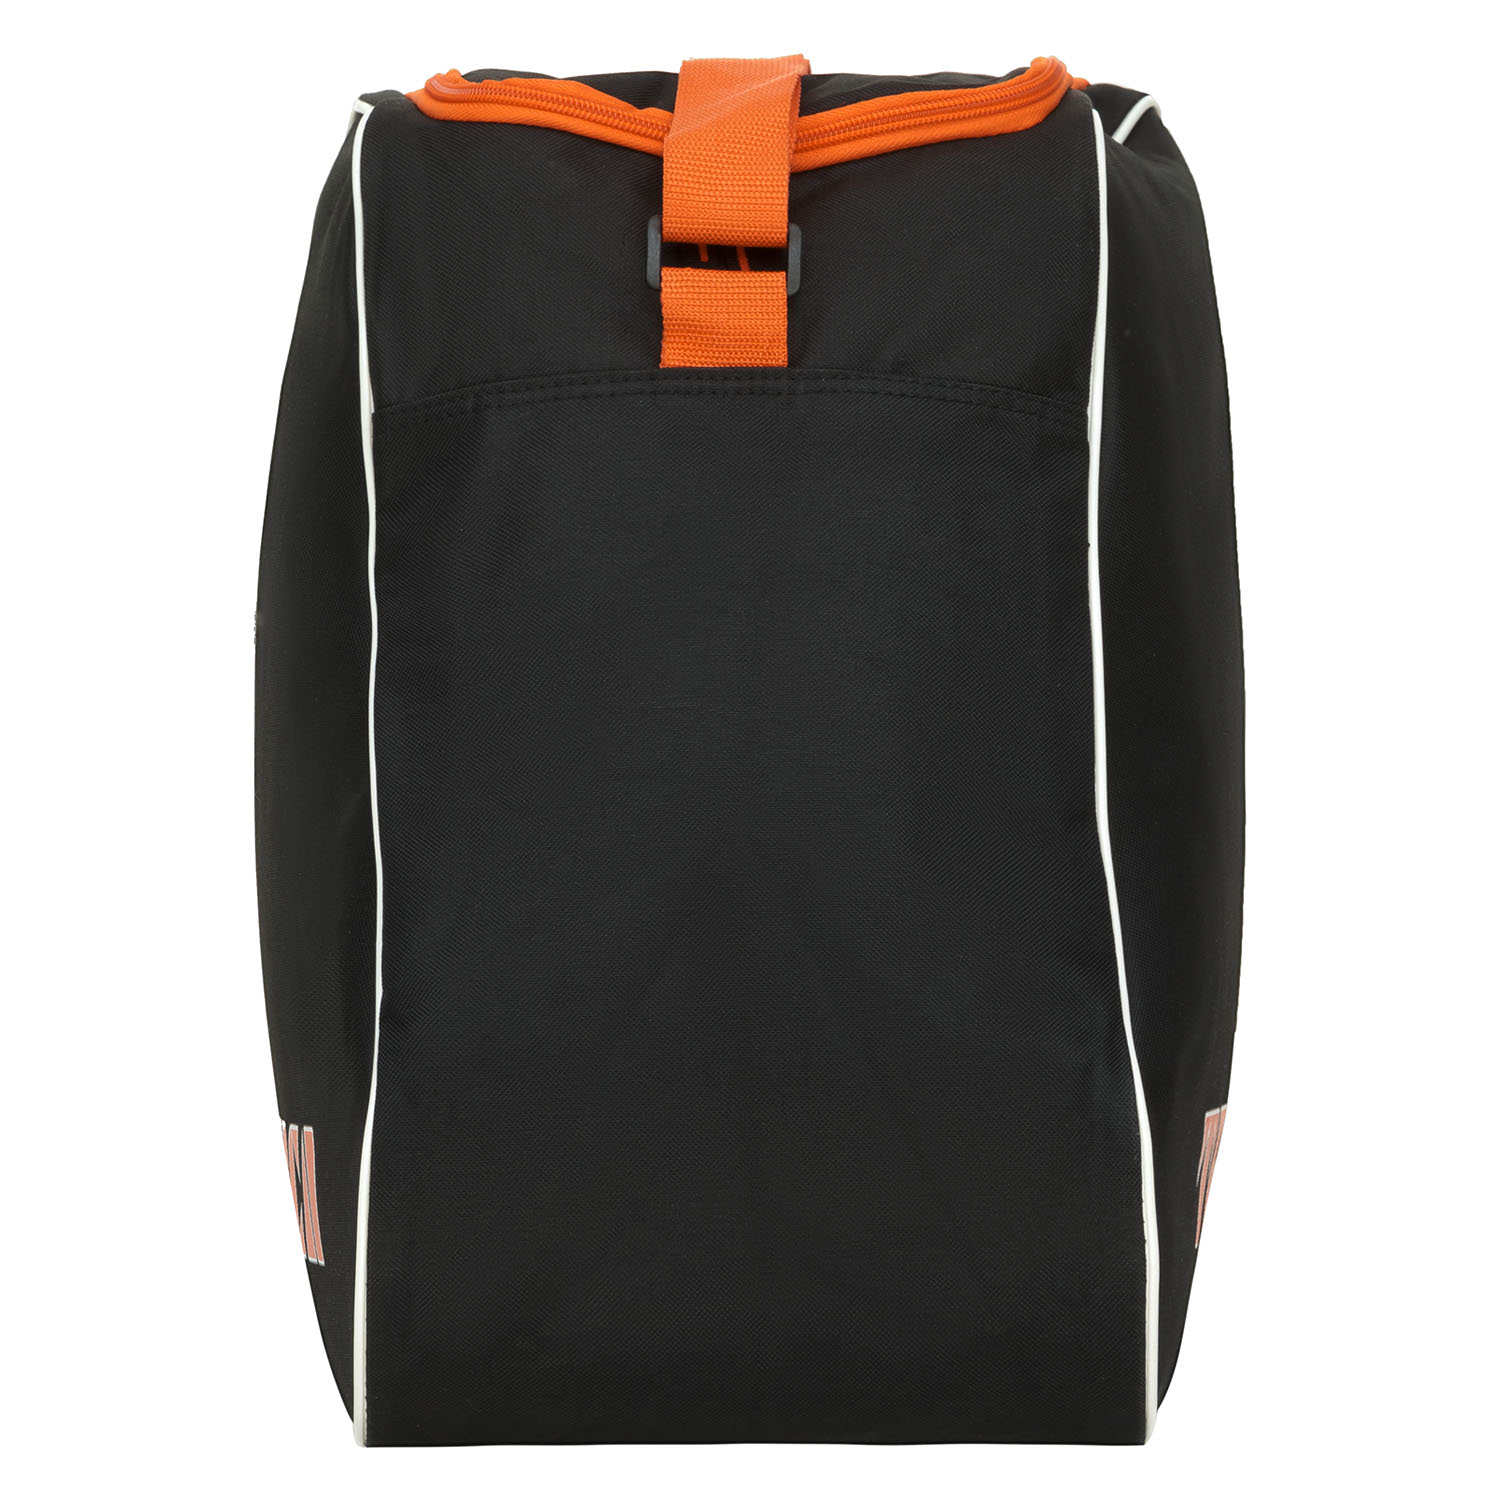 Сумка для ботинок Tecnica Skiboot bag Black/Orange